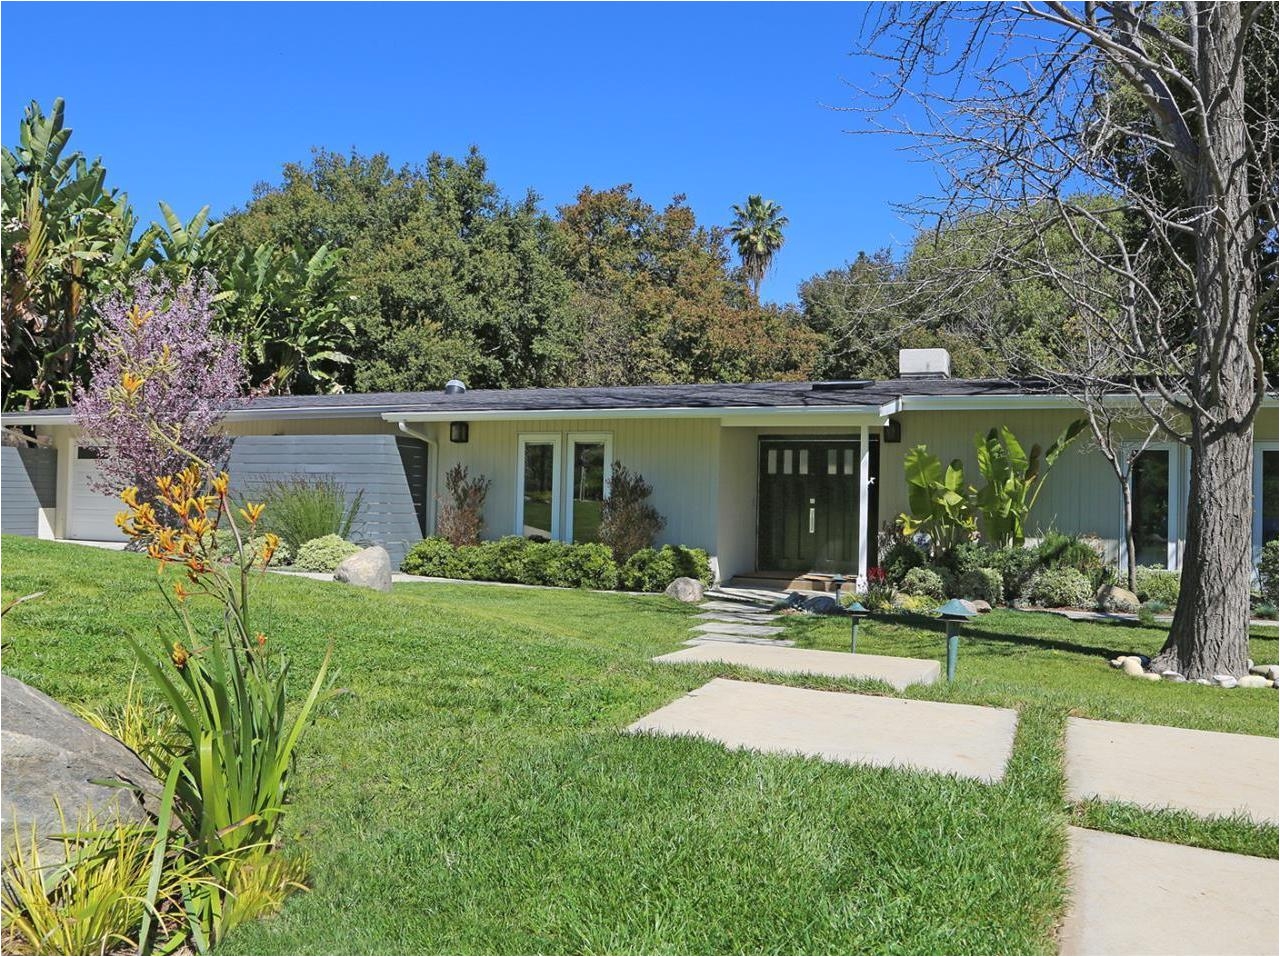 Homes for Sale In Pasadena Ca 1405 El Mirador Drive Pasadena Ca 91103 Dilbeck Real Estate